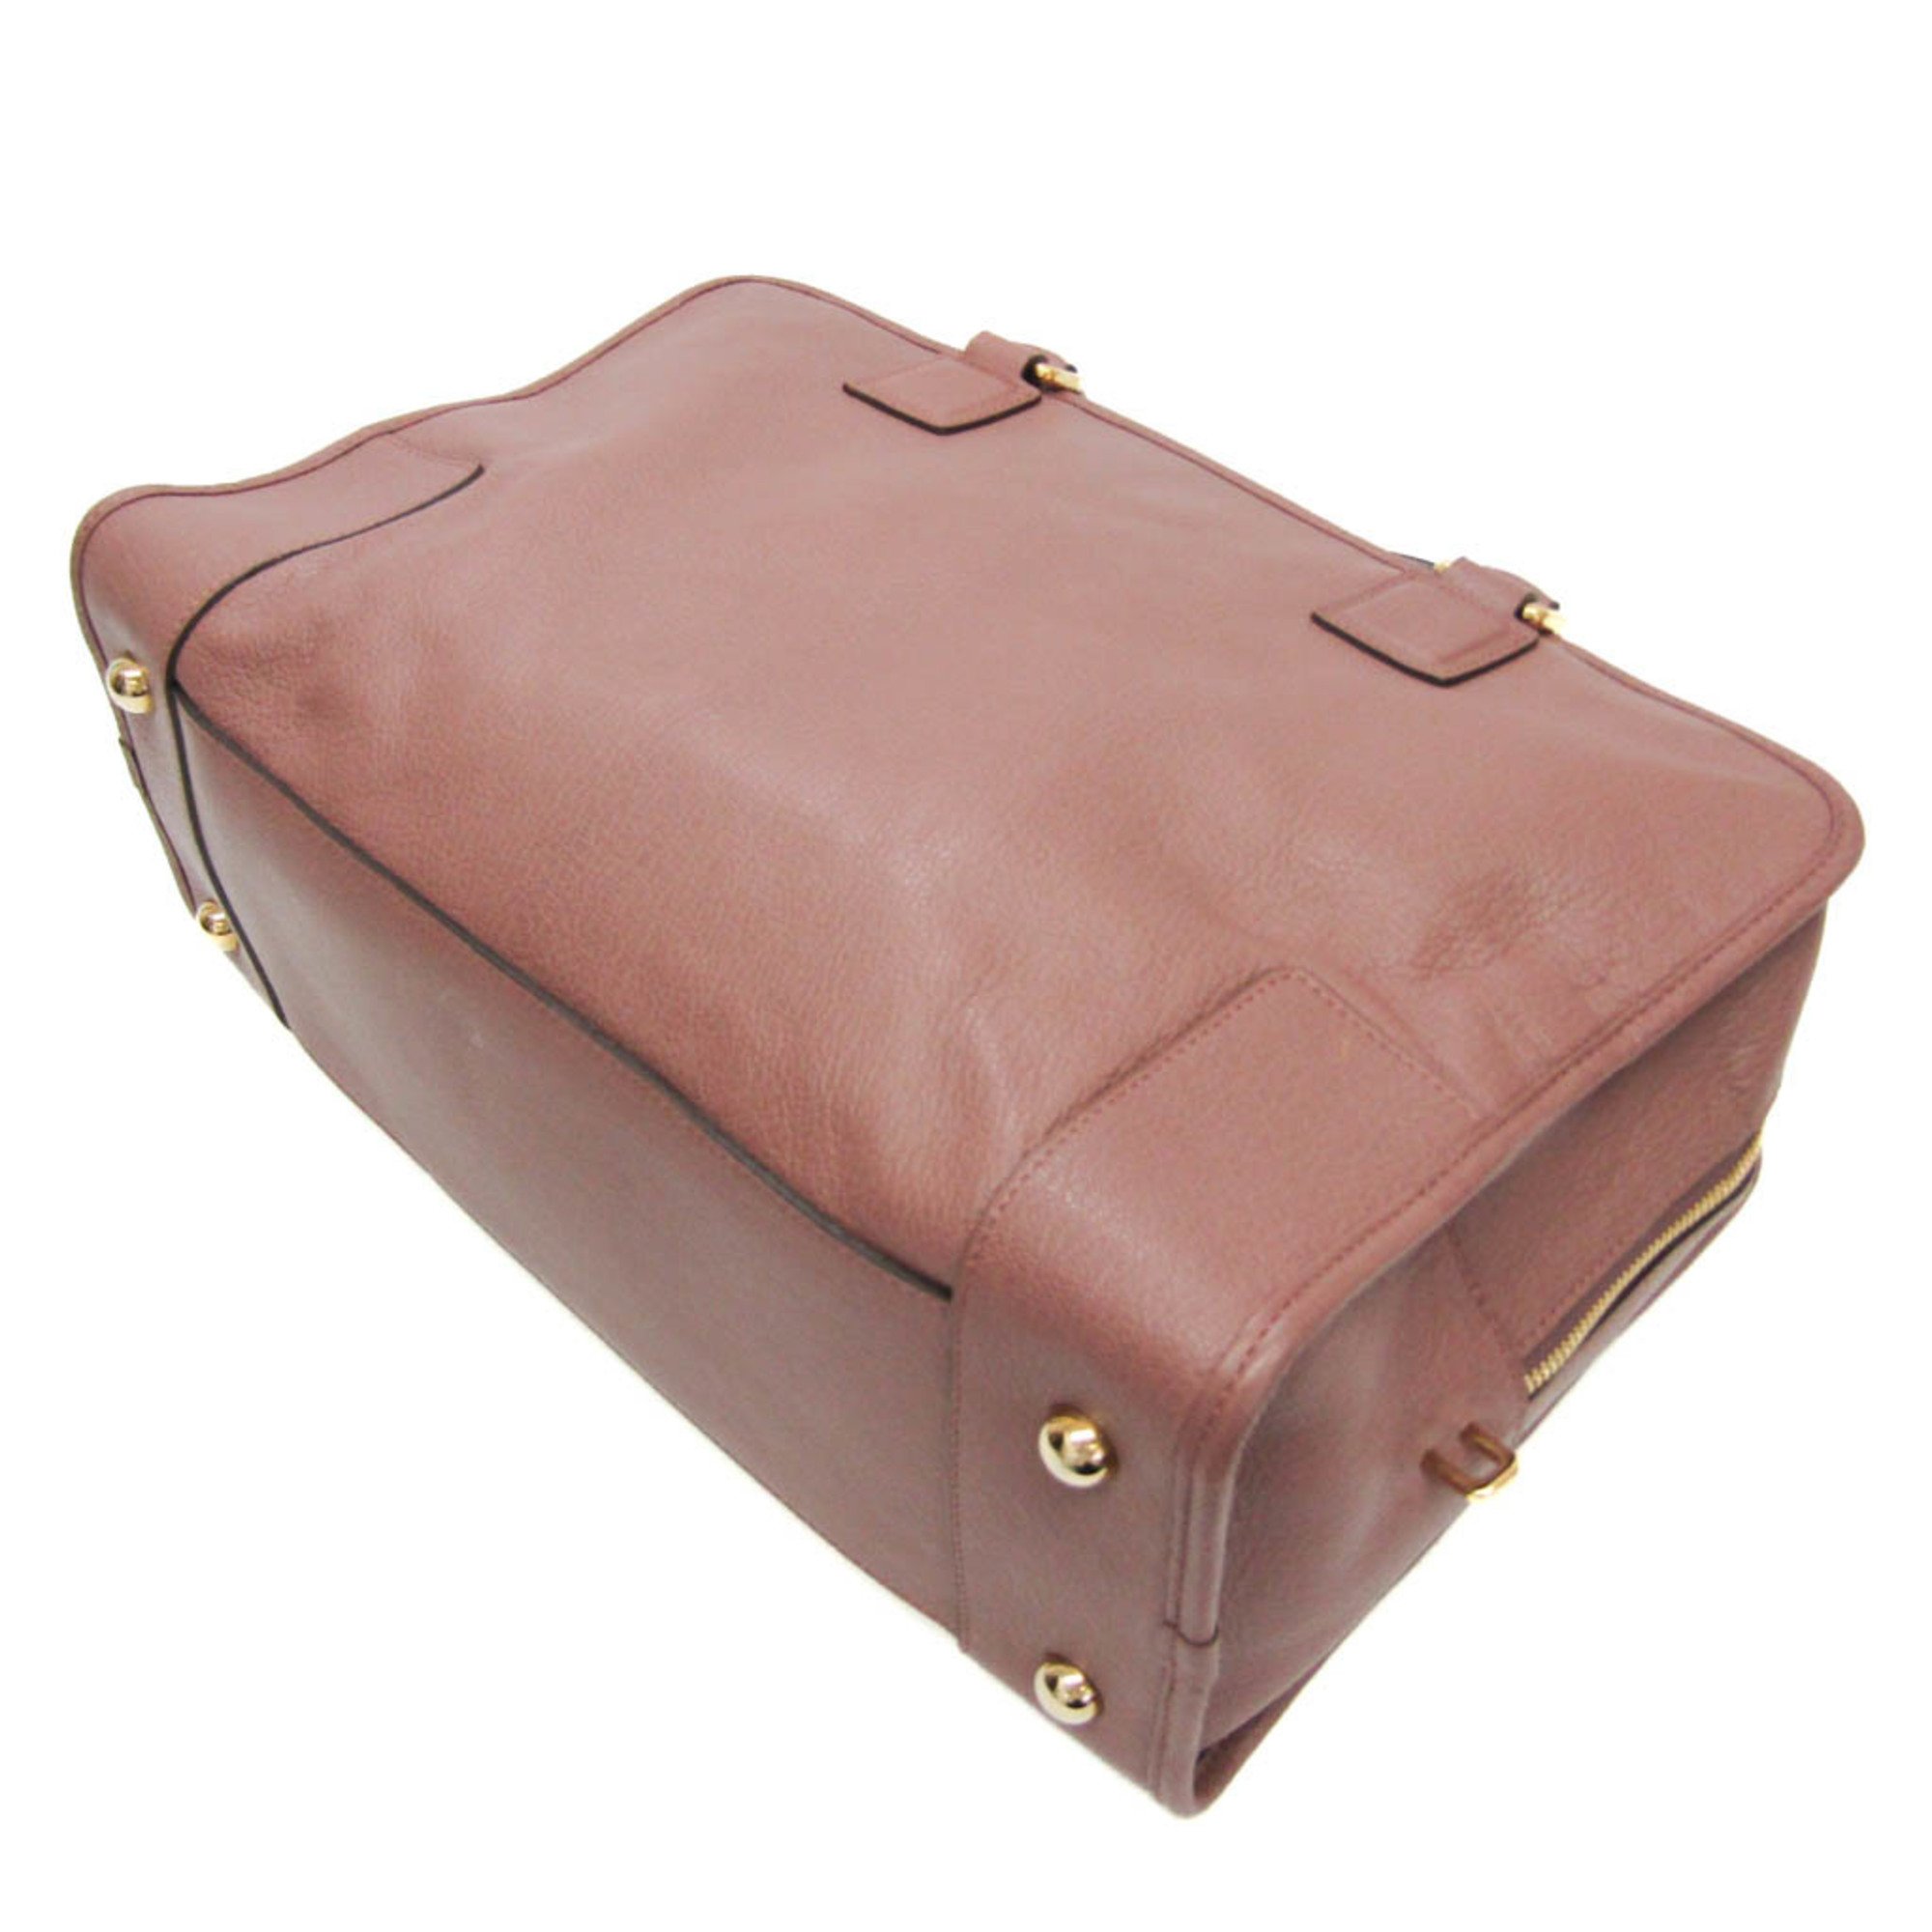 Loewe Amazona 36 Women's Leather Handbag Pink Beige